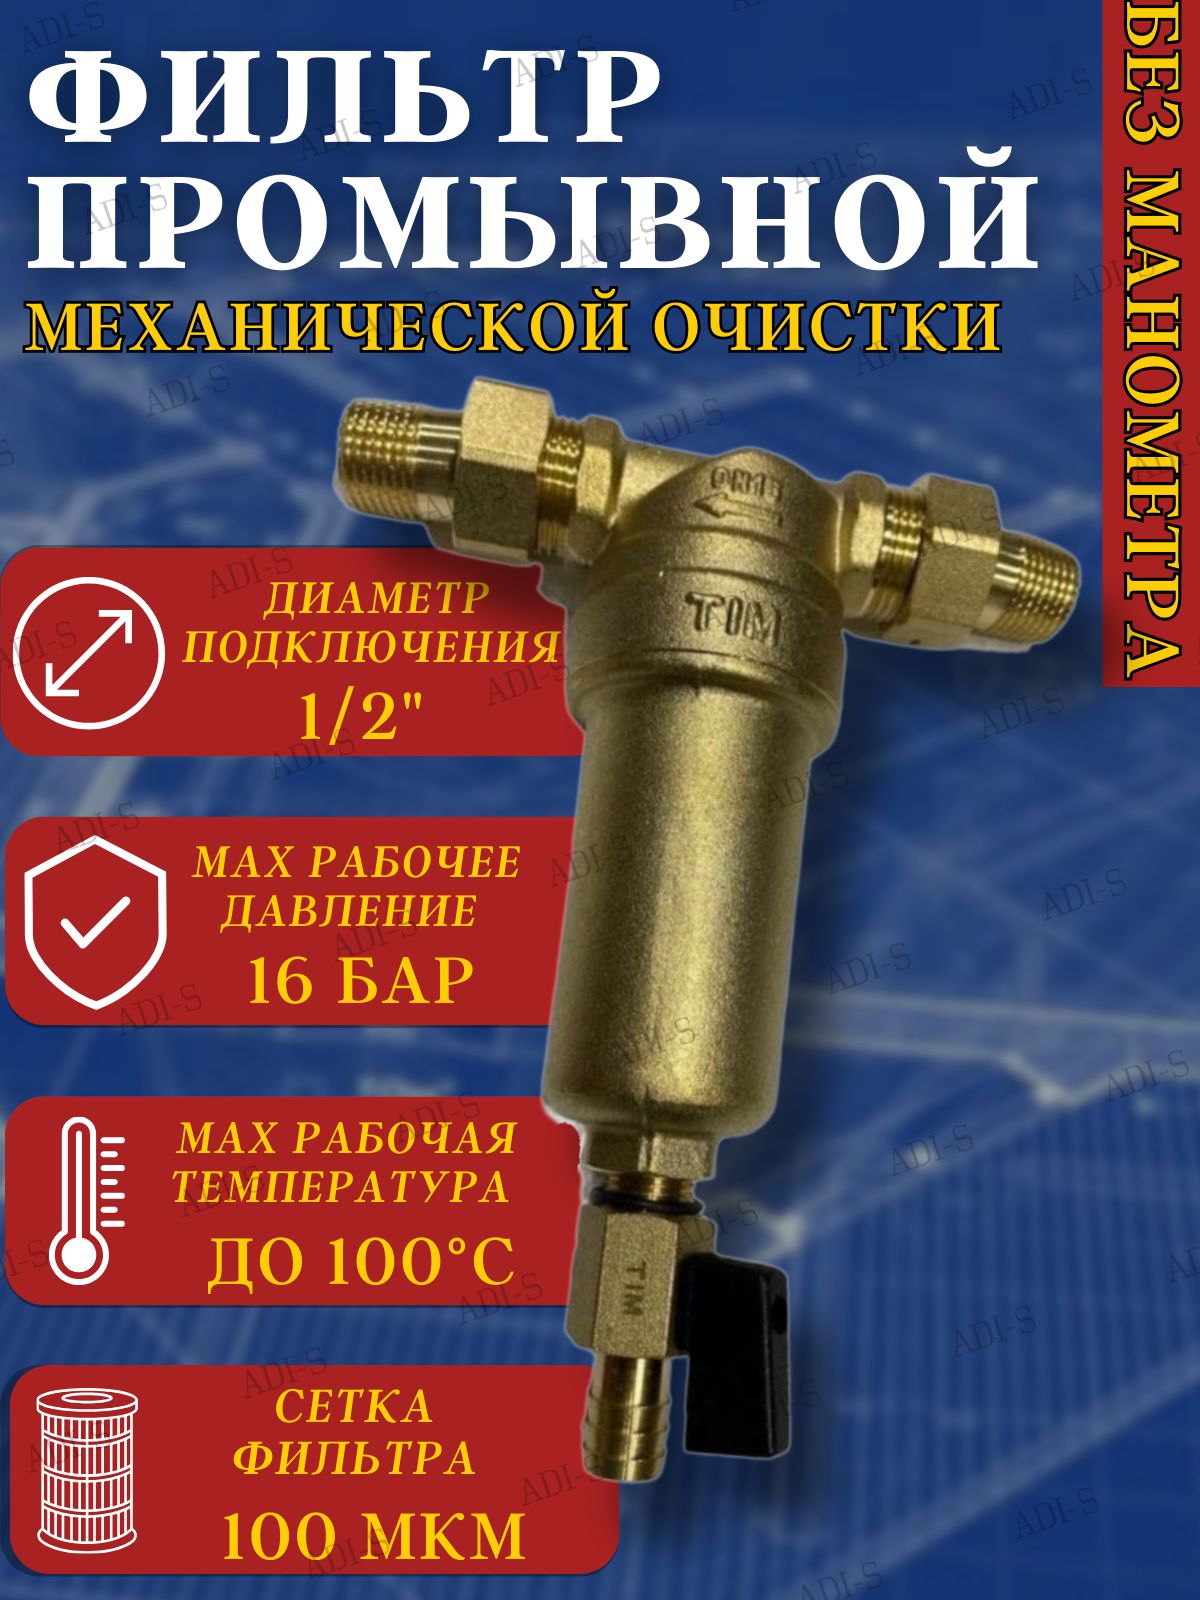 Фильтрсамопромывной-1/2"промывнойдляотопления,длягорячейихолоднойводы,безманометра,латуннаяколбаTIMJH-1003